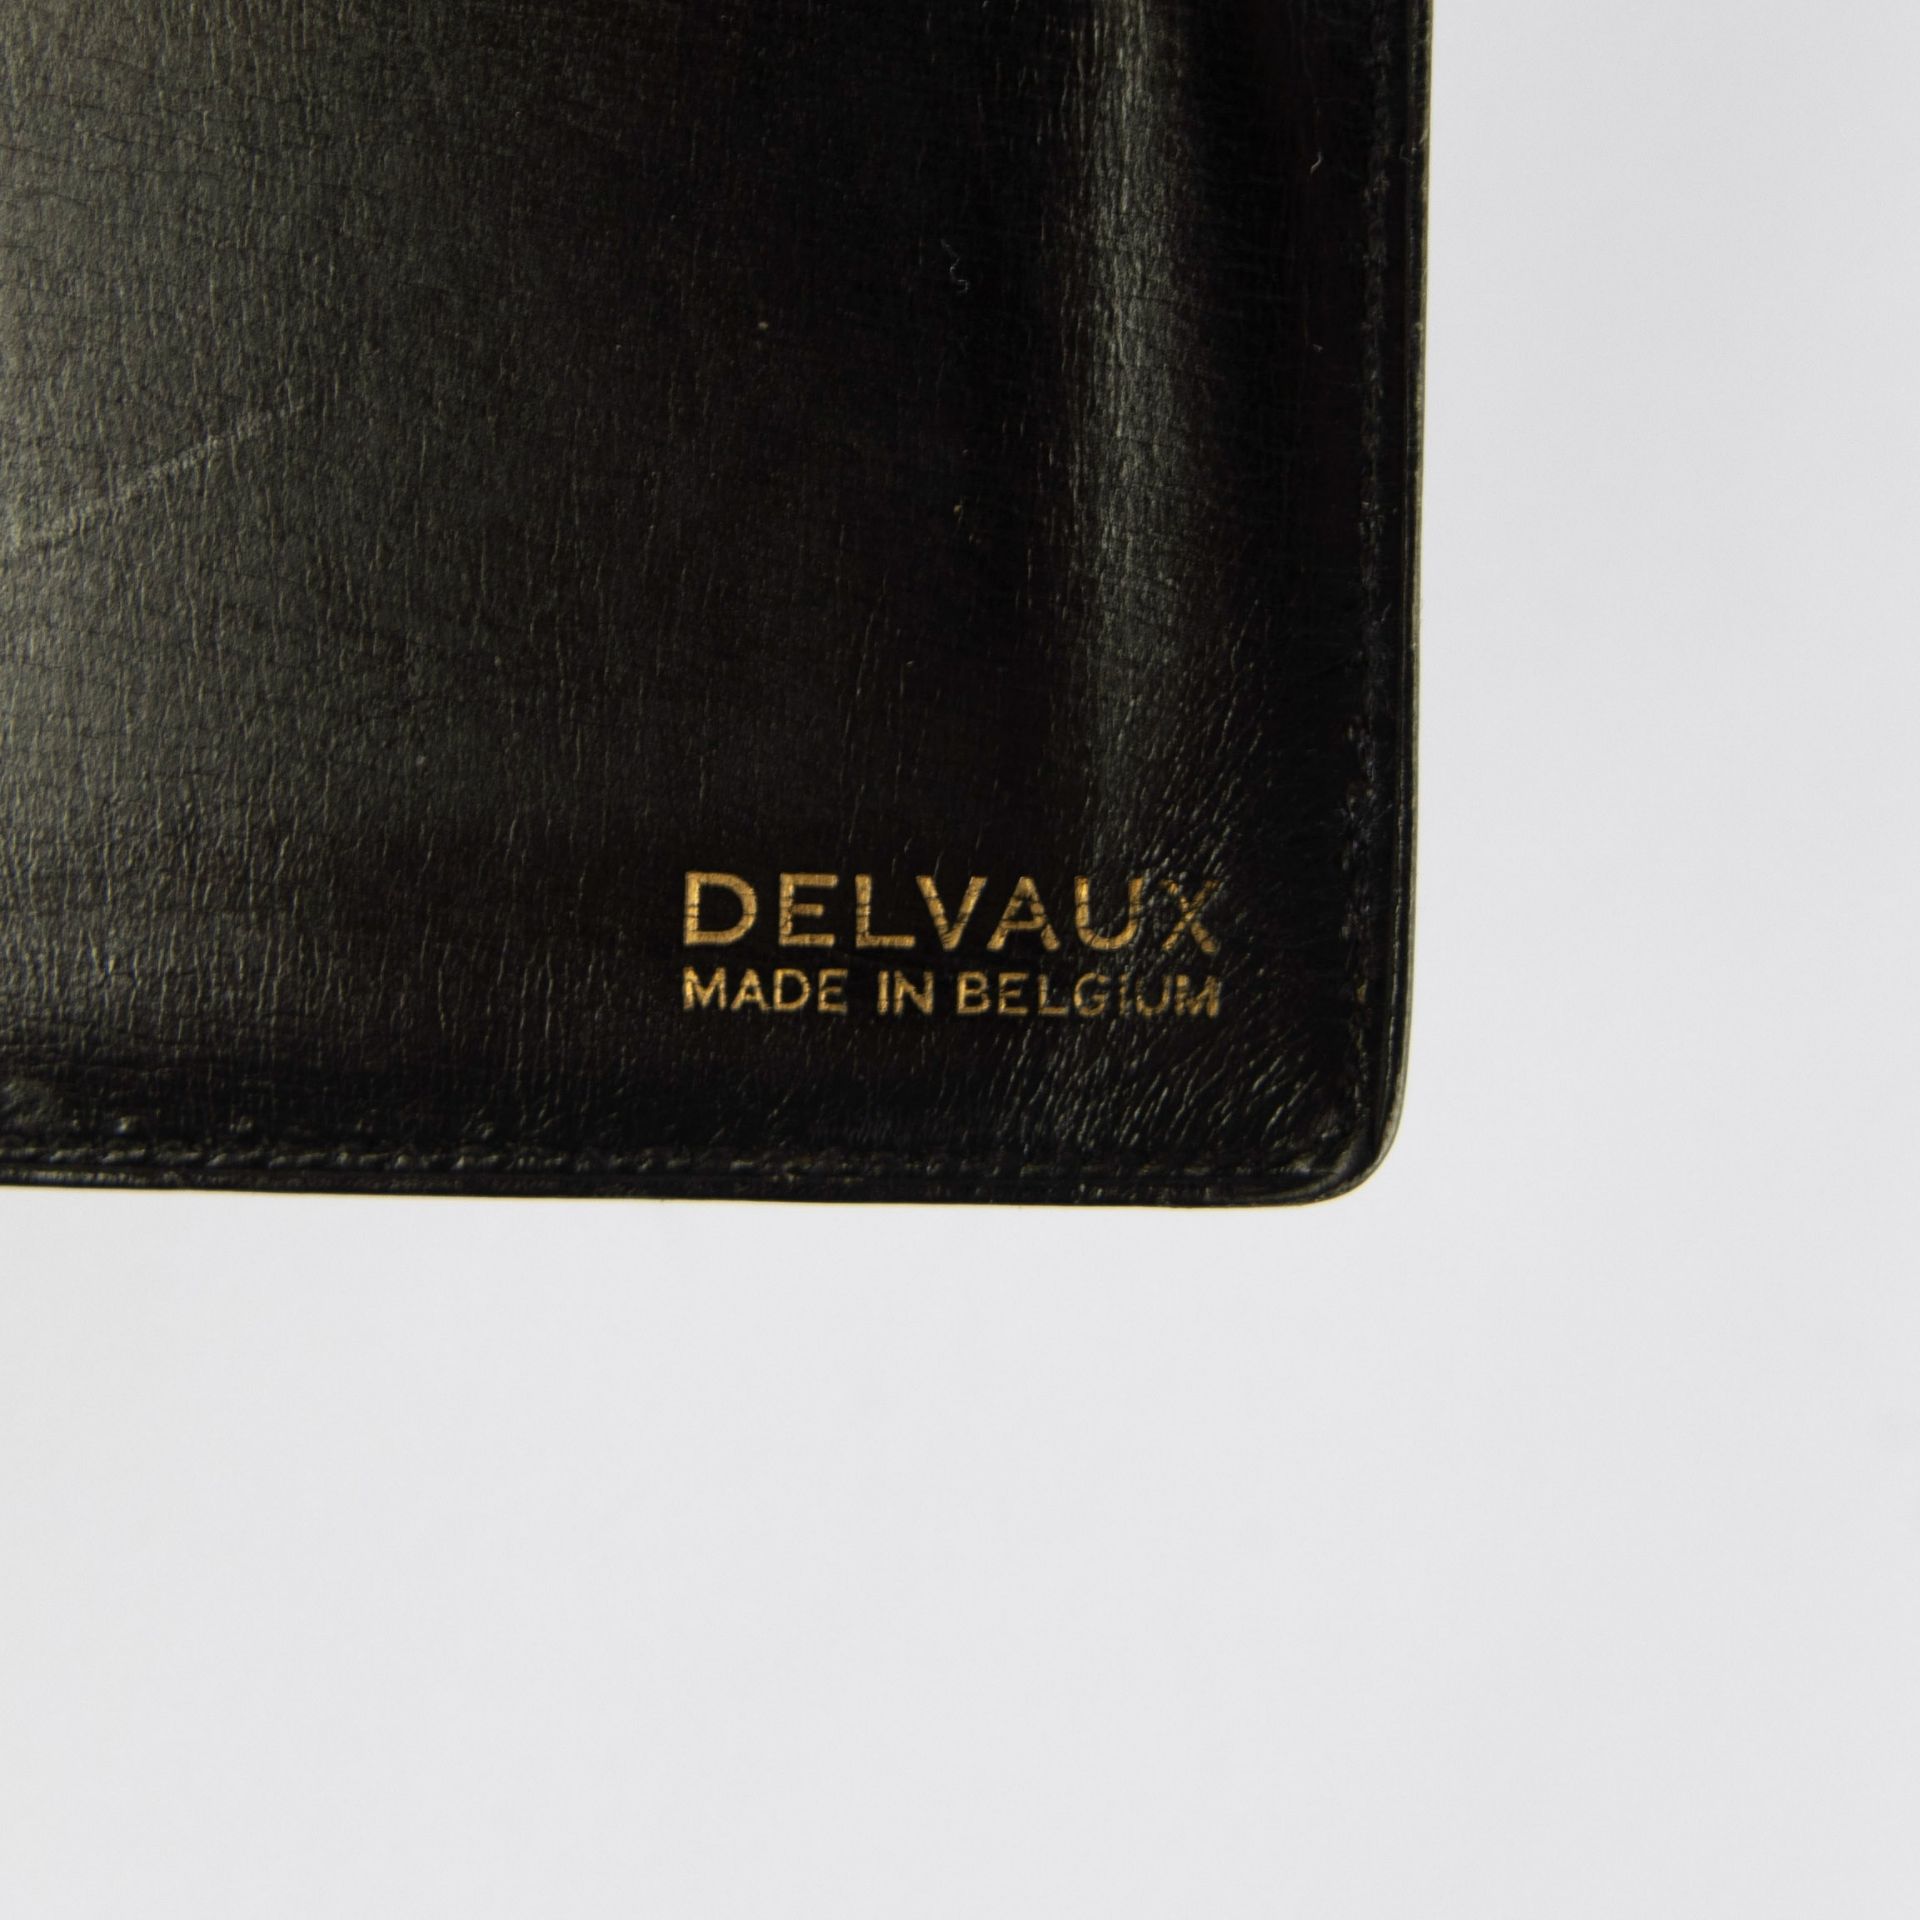 Delvaux pochette in croco - Image 4 of 4